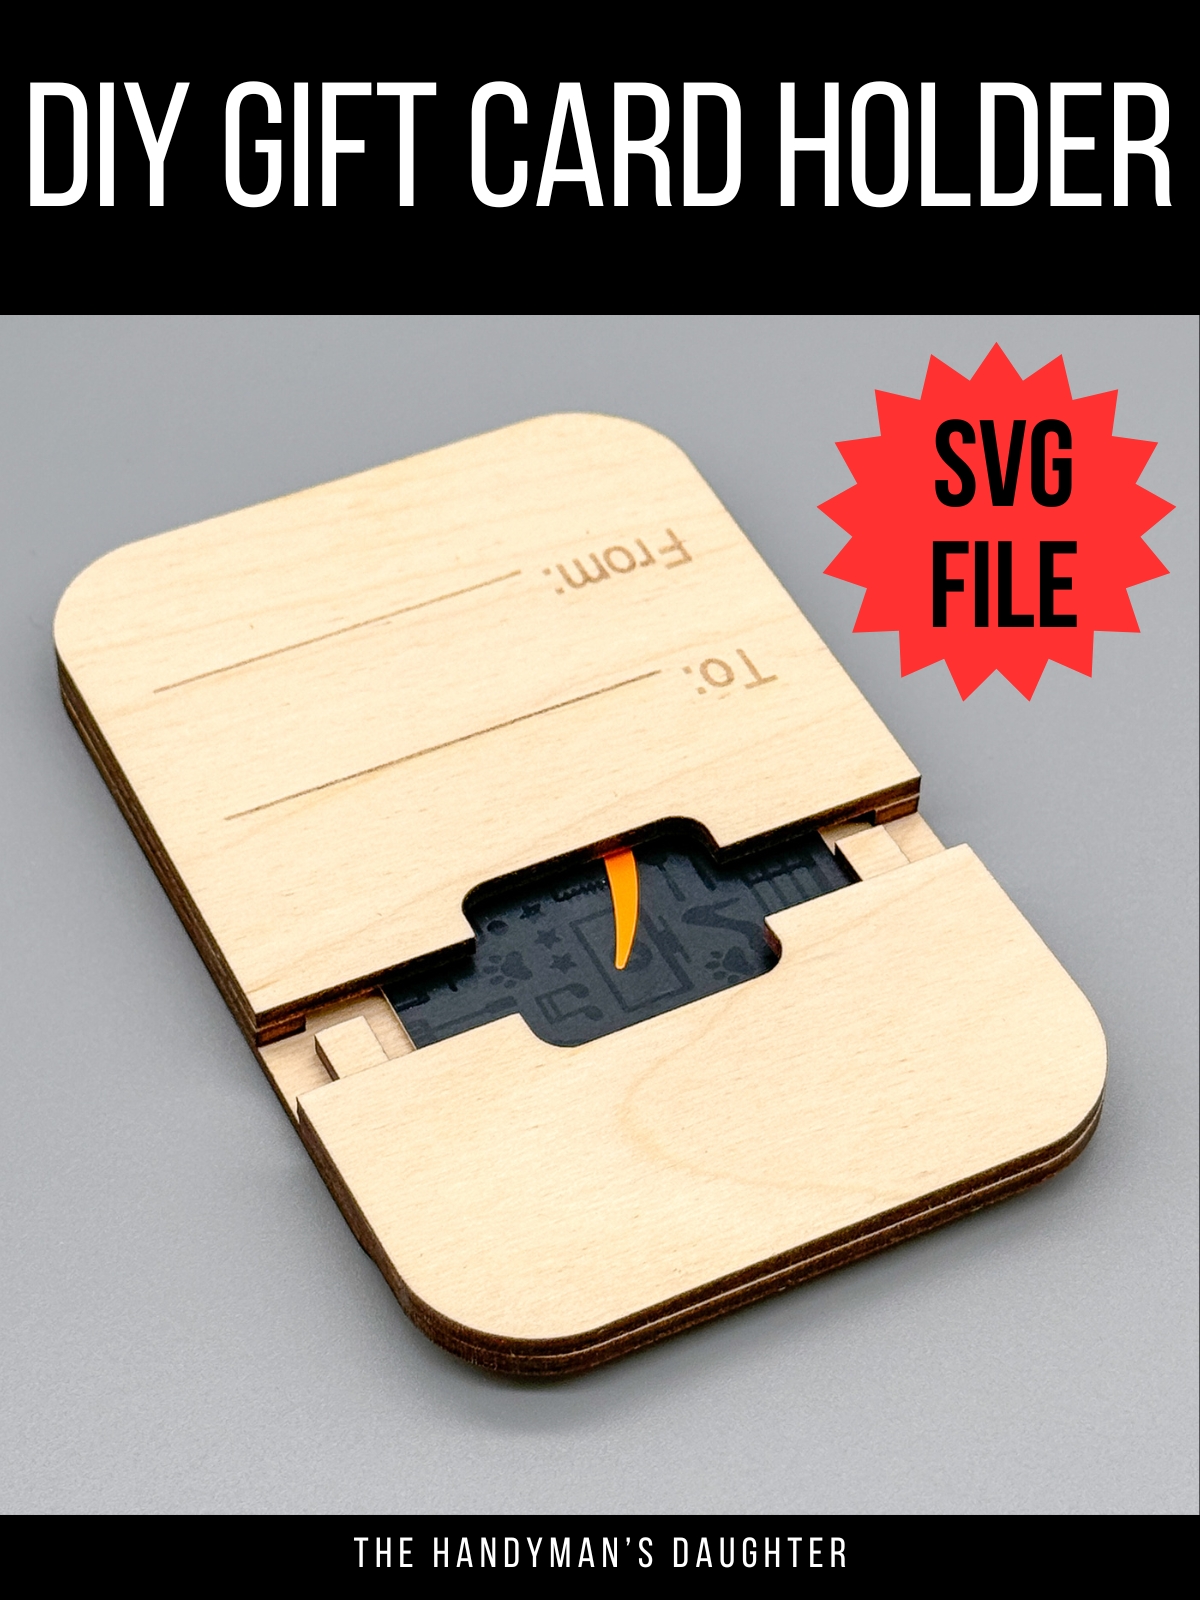 DIY gift card holder with SVG file